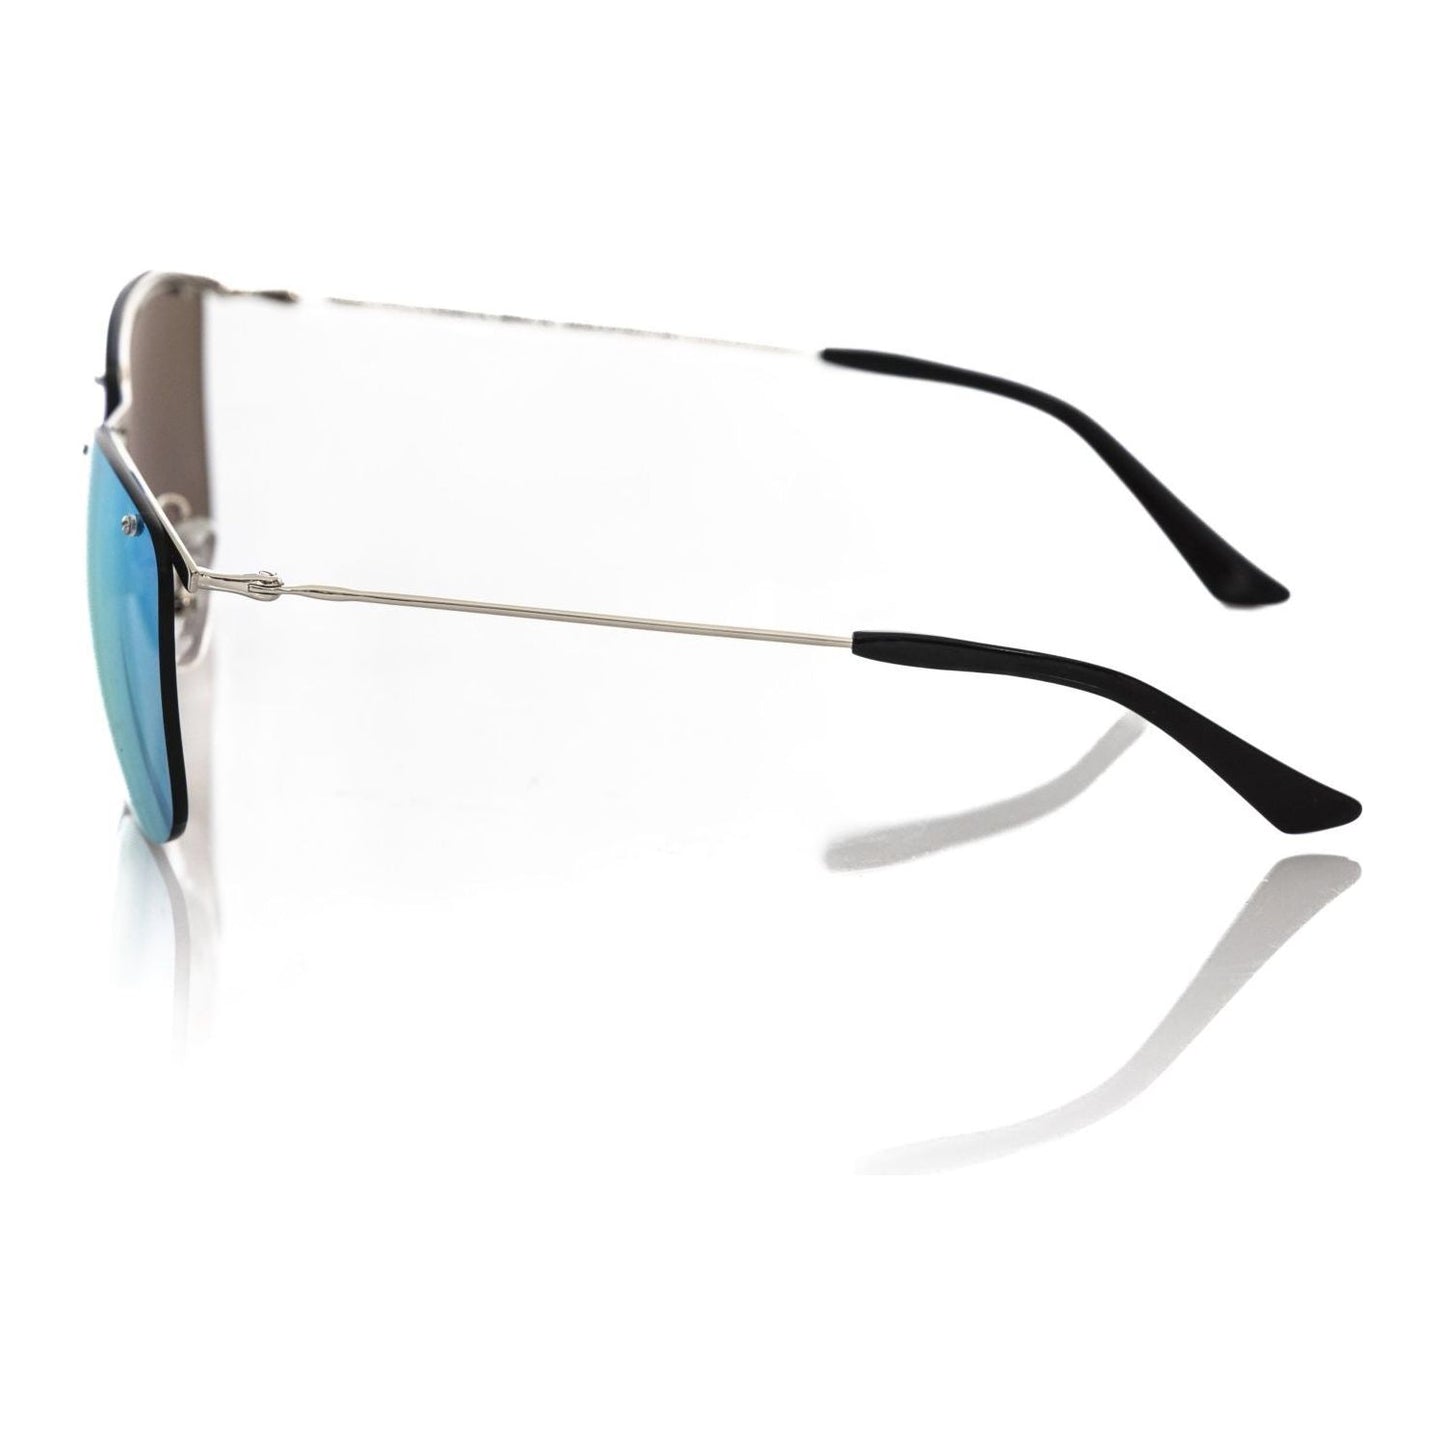 Frankie Morello Silver Clubmaster Mirrored Sunglasses silver-metallic-fibre-sunglasses-1 product-22137-1626999058-scaled-a4d36a2e-36c.jpg